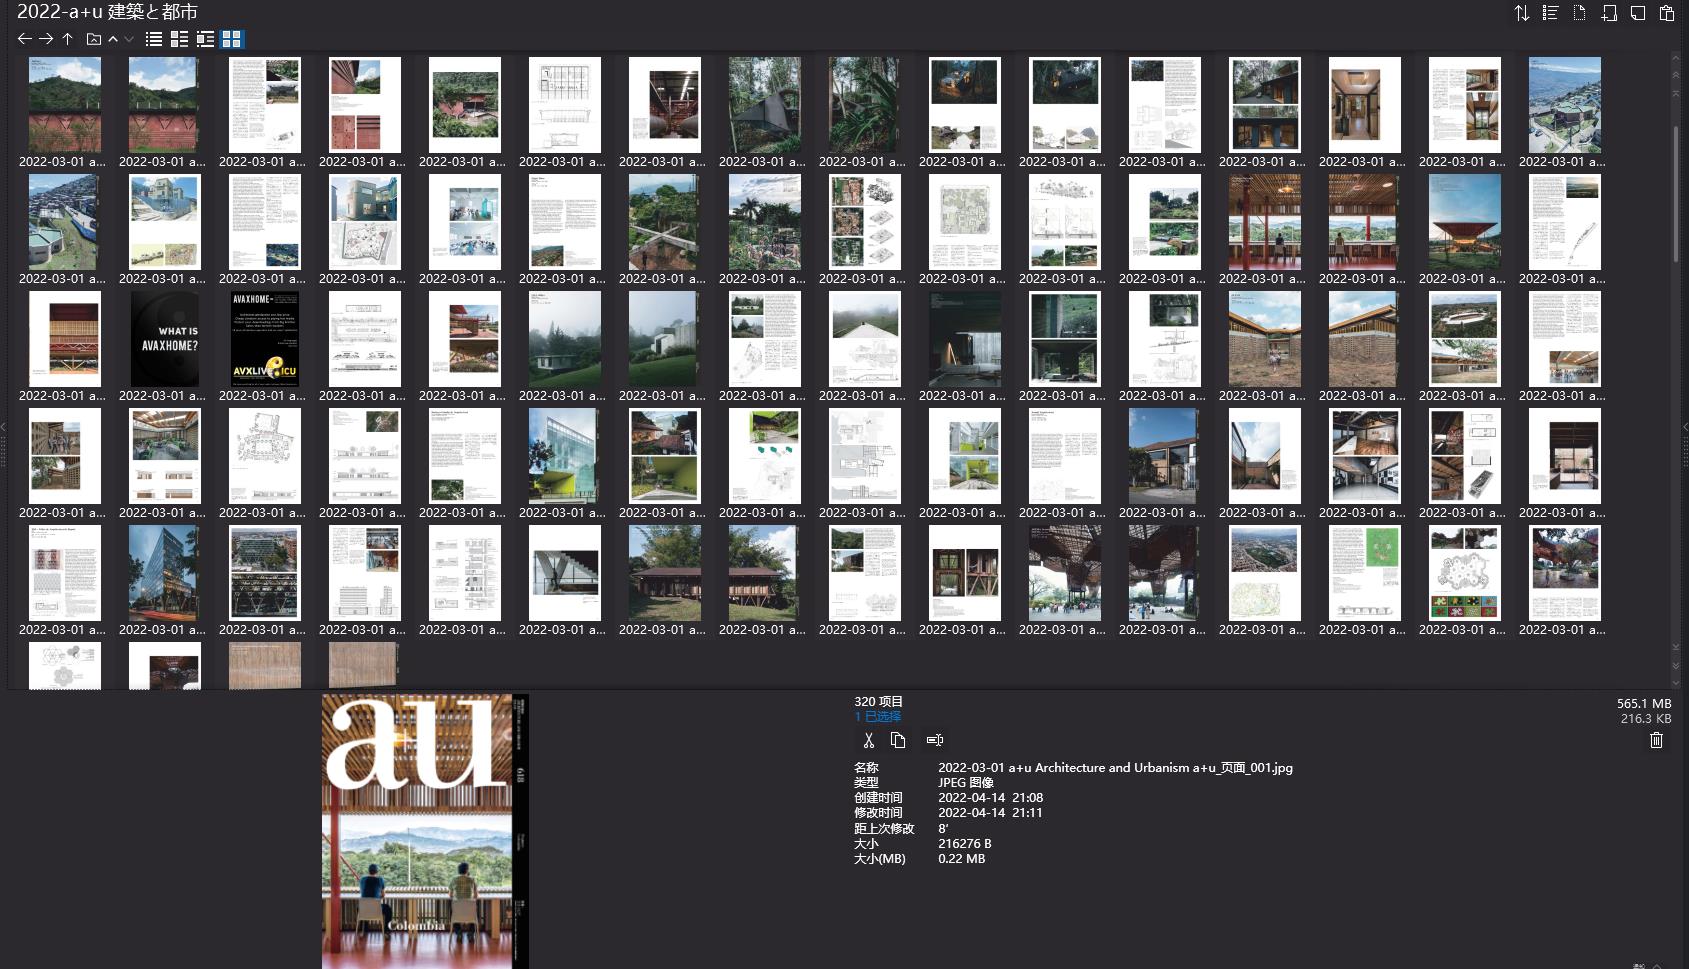 建筑と都市,建筑杂志,建筑设计电子杂志,杂志下载,a+u建筑杂志,a+u 建築と都市